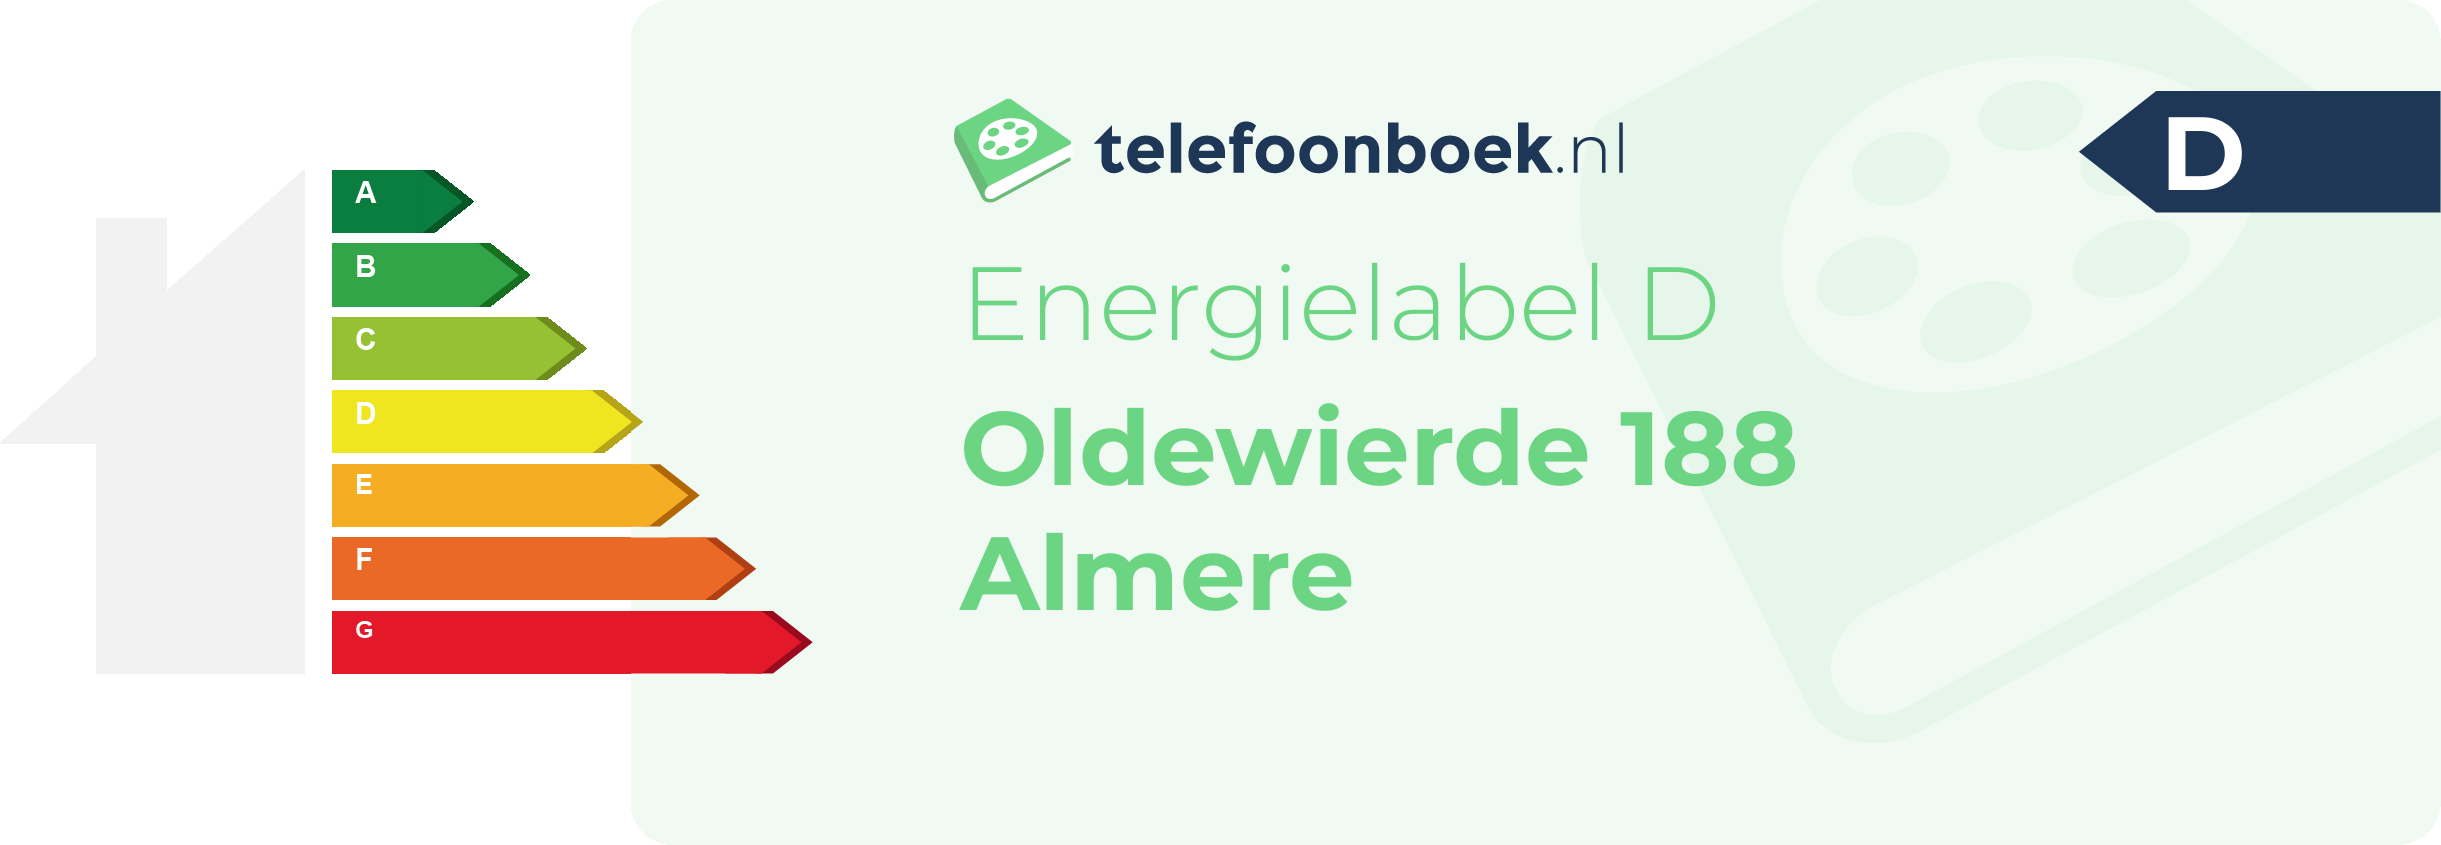 Energielabel Oldewierde 188 Almere